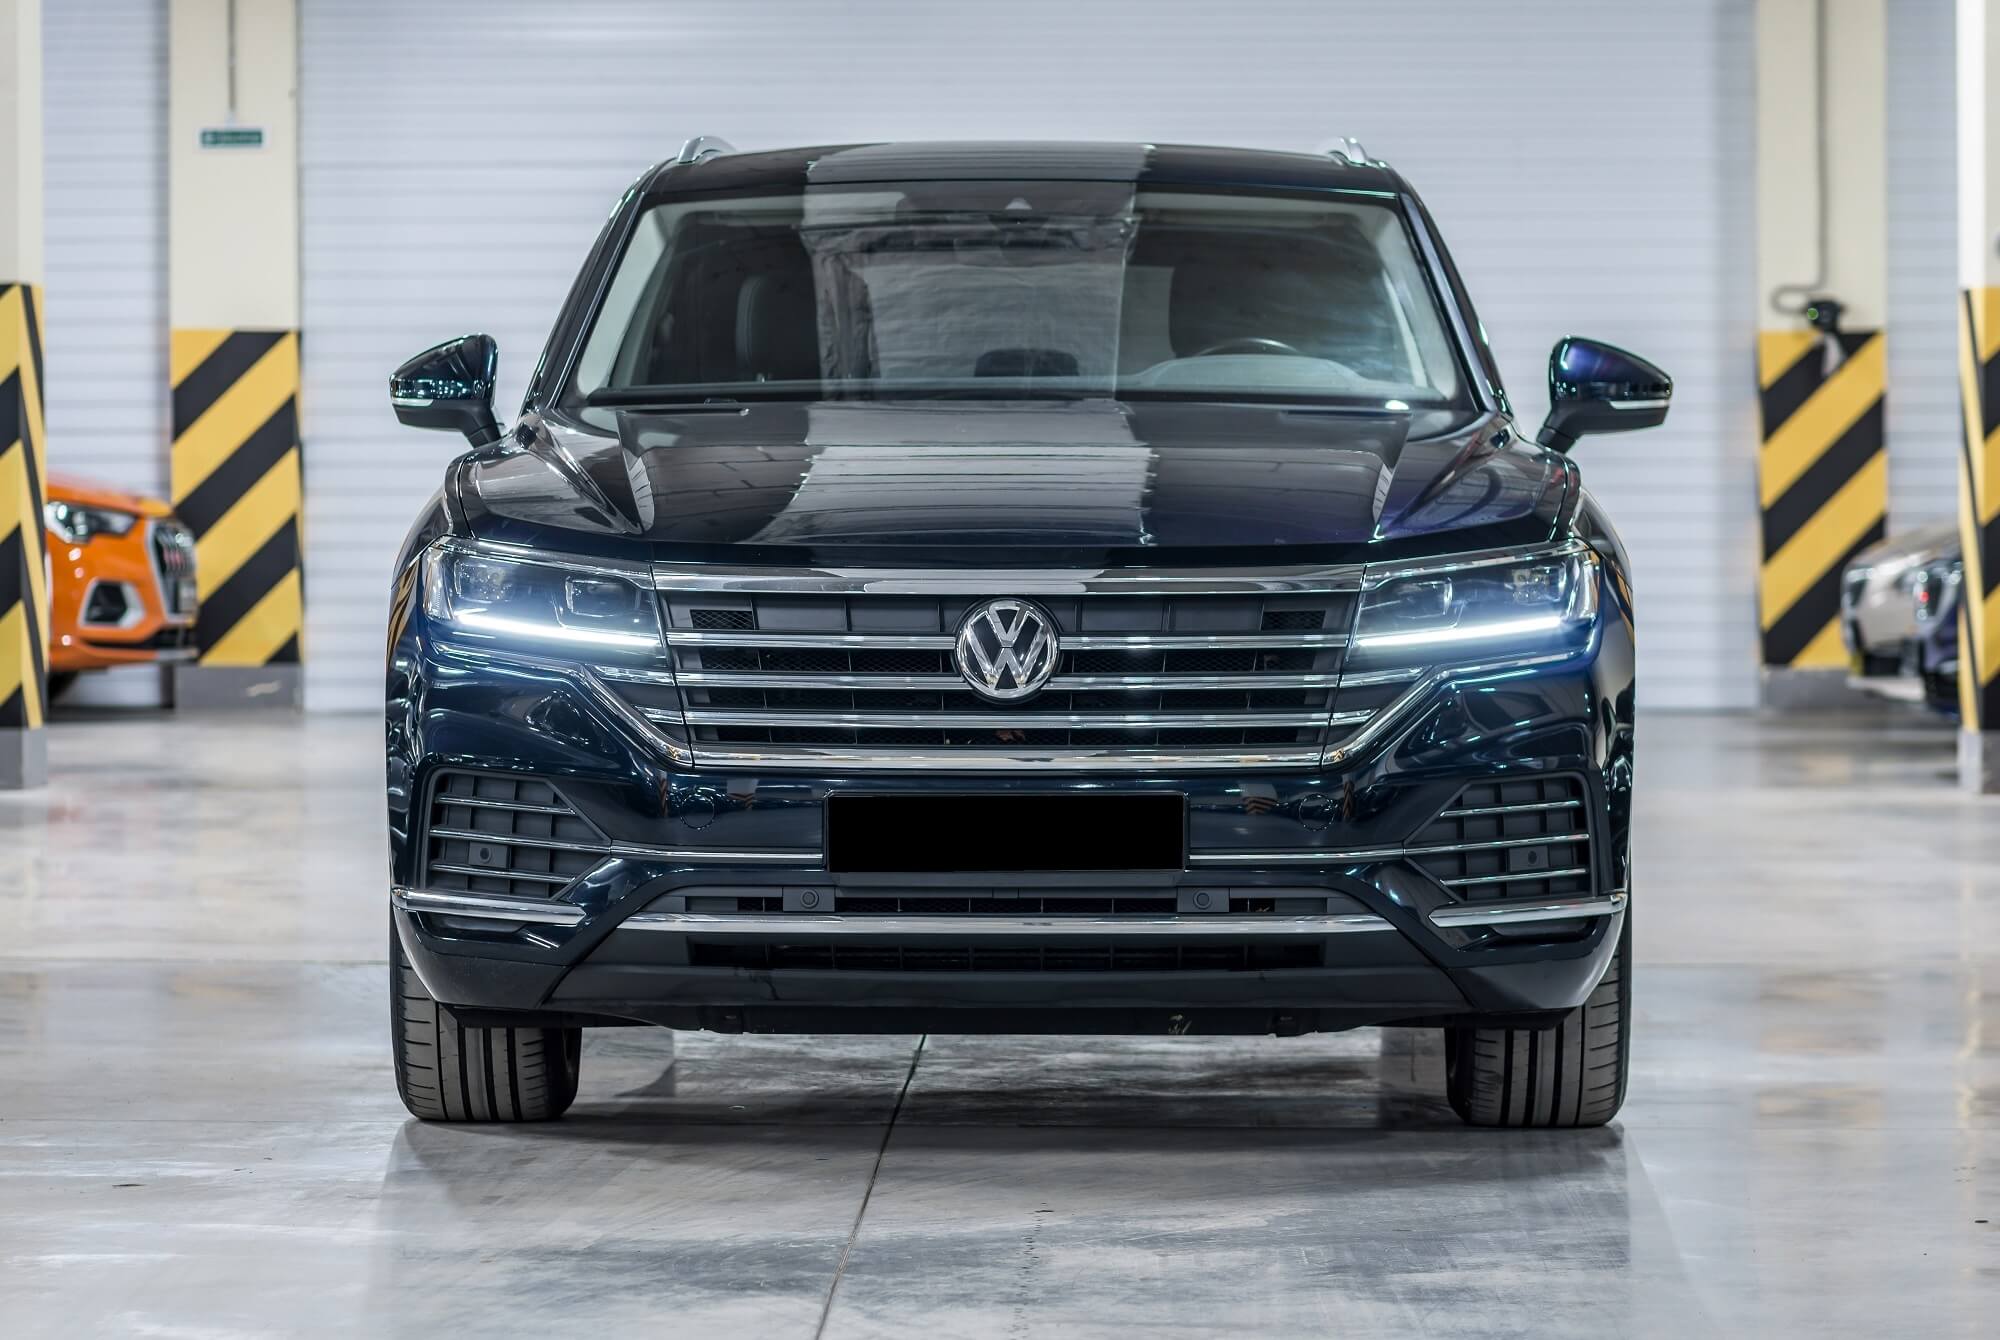 Alquilar un Volkswagen en Dubai